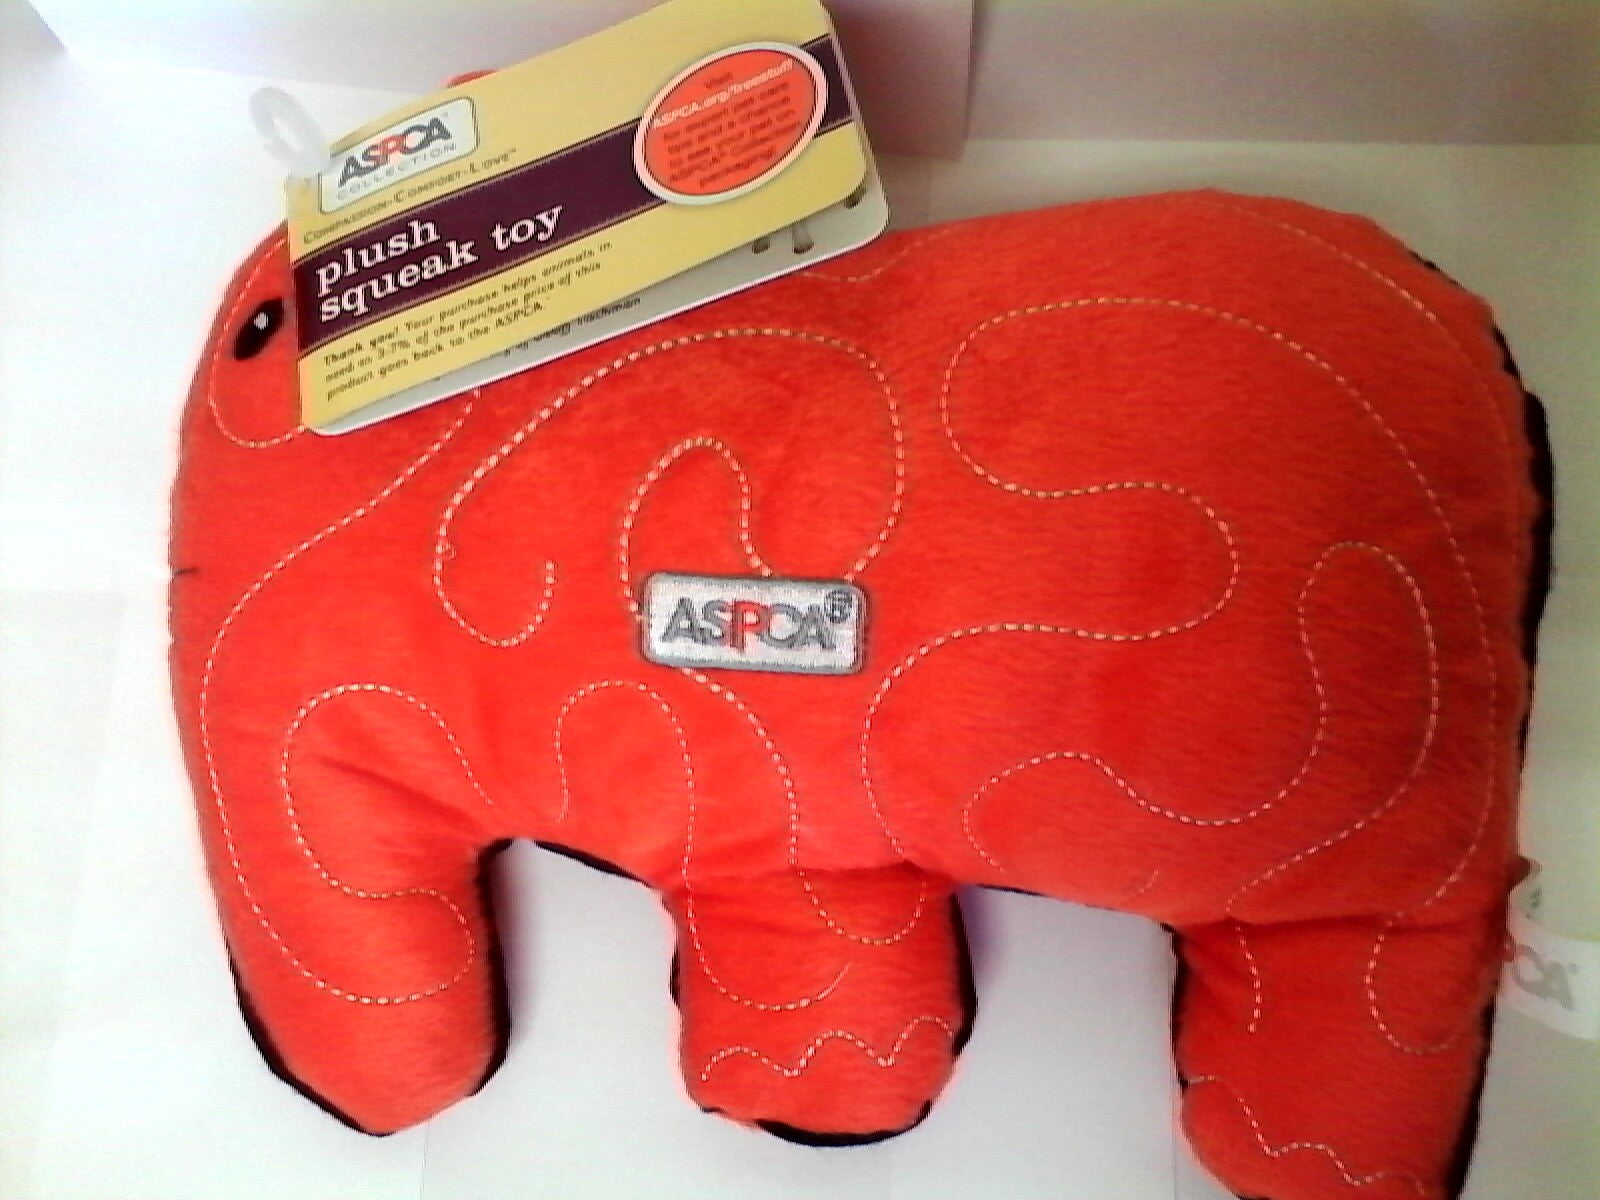 ASPCA Quilt Elephant Plush Squeak Toy